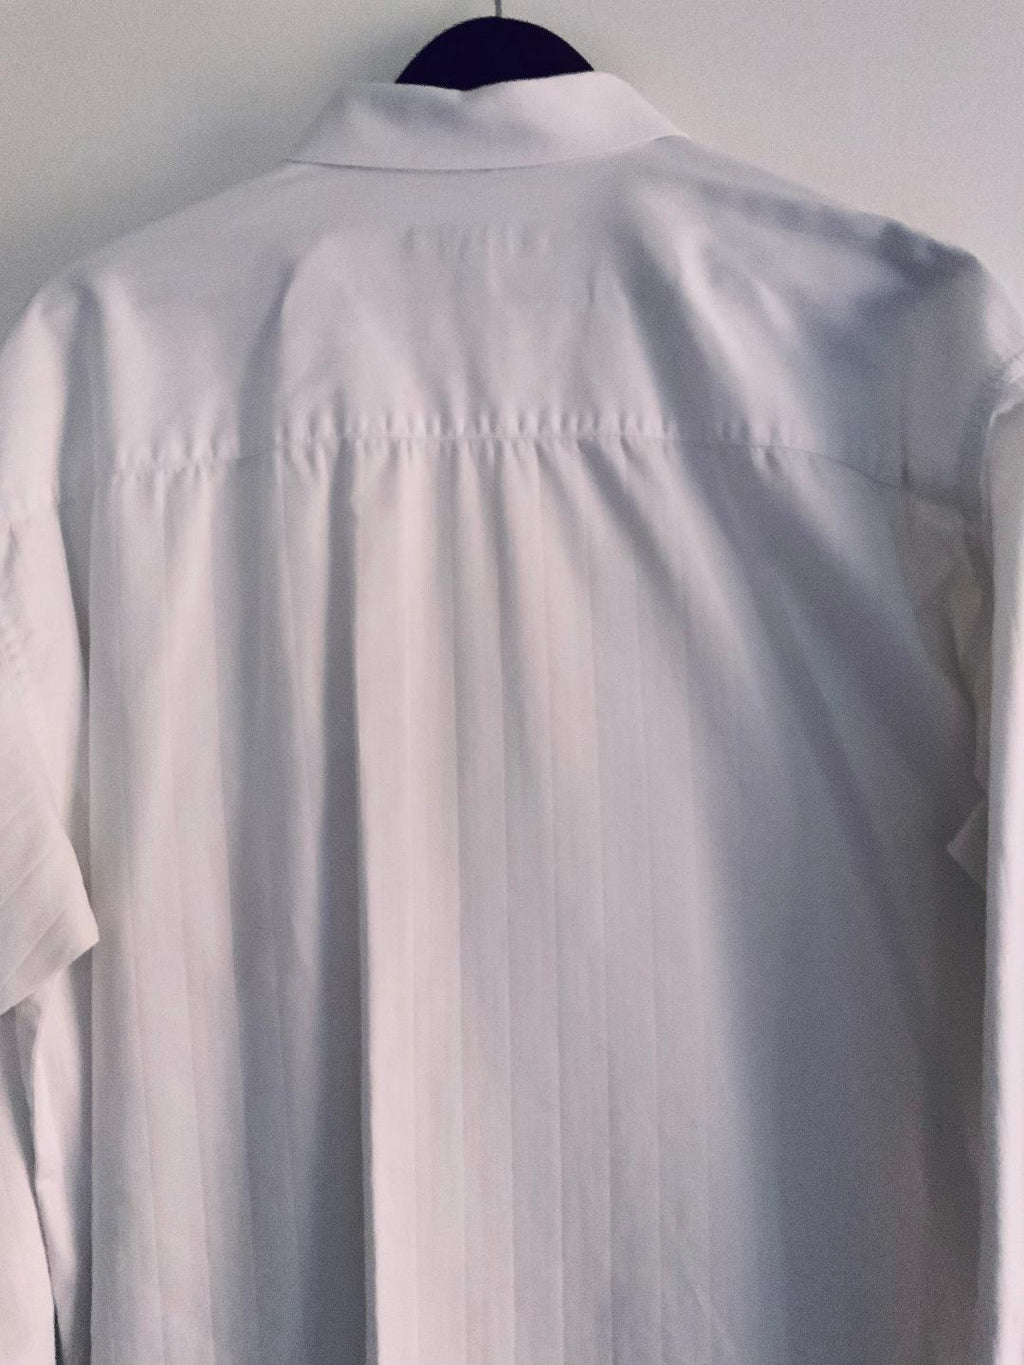 KENNETH COLE REACTION  Camisa clásica para hombre blanca. Talla XL